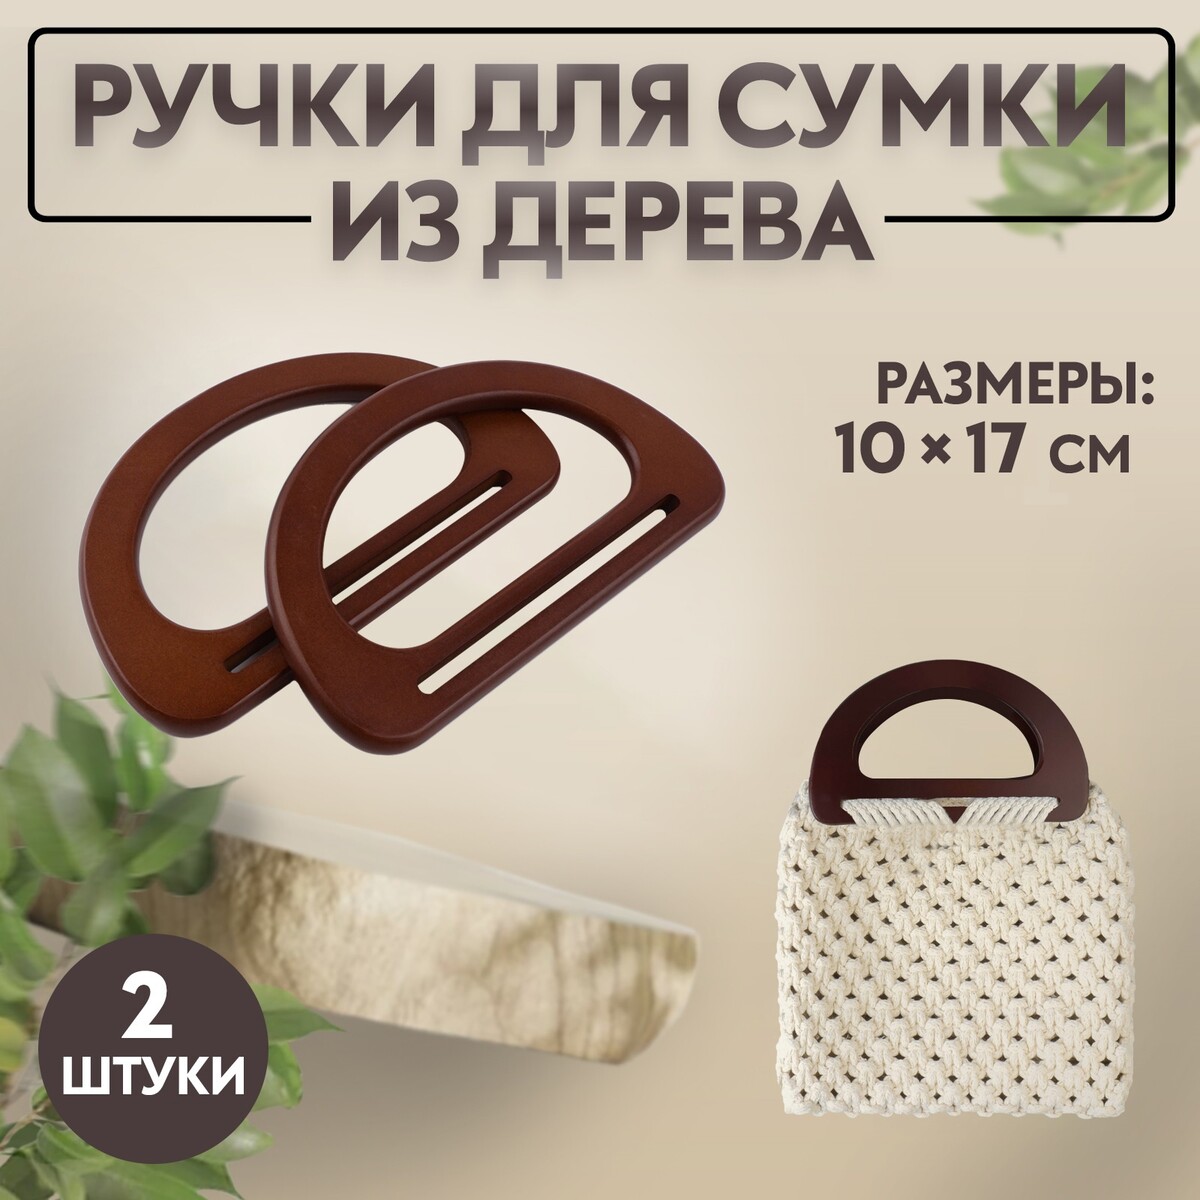 Ручки для сумки деревянные, 10 × 17 см, 2 шт, цвет темно-коричневый ручки для сумки деревянные 15 × 8 см 2 шт светло коричневый